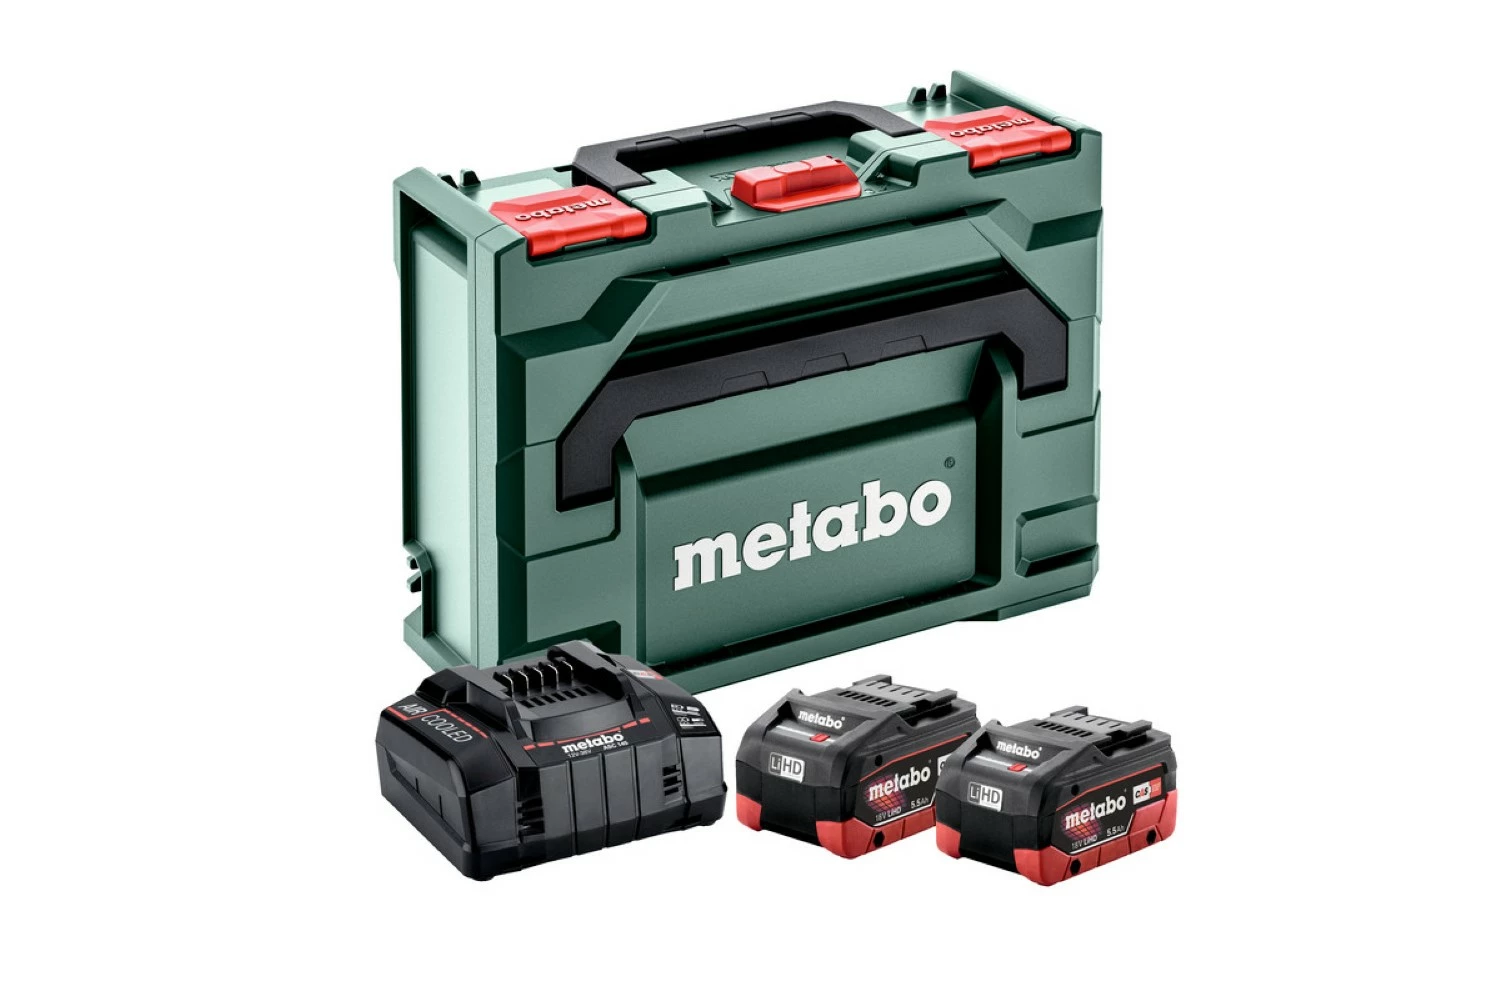 Metabo 685077000 18V LiHD accu starterset (2x 5.5Ah) + lader in MetaBox